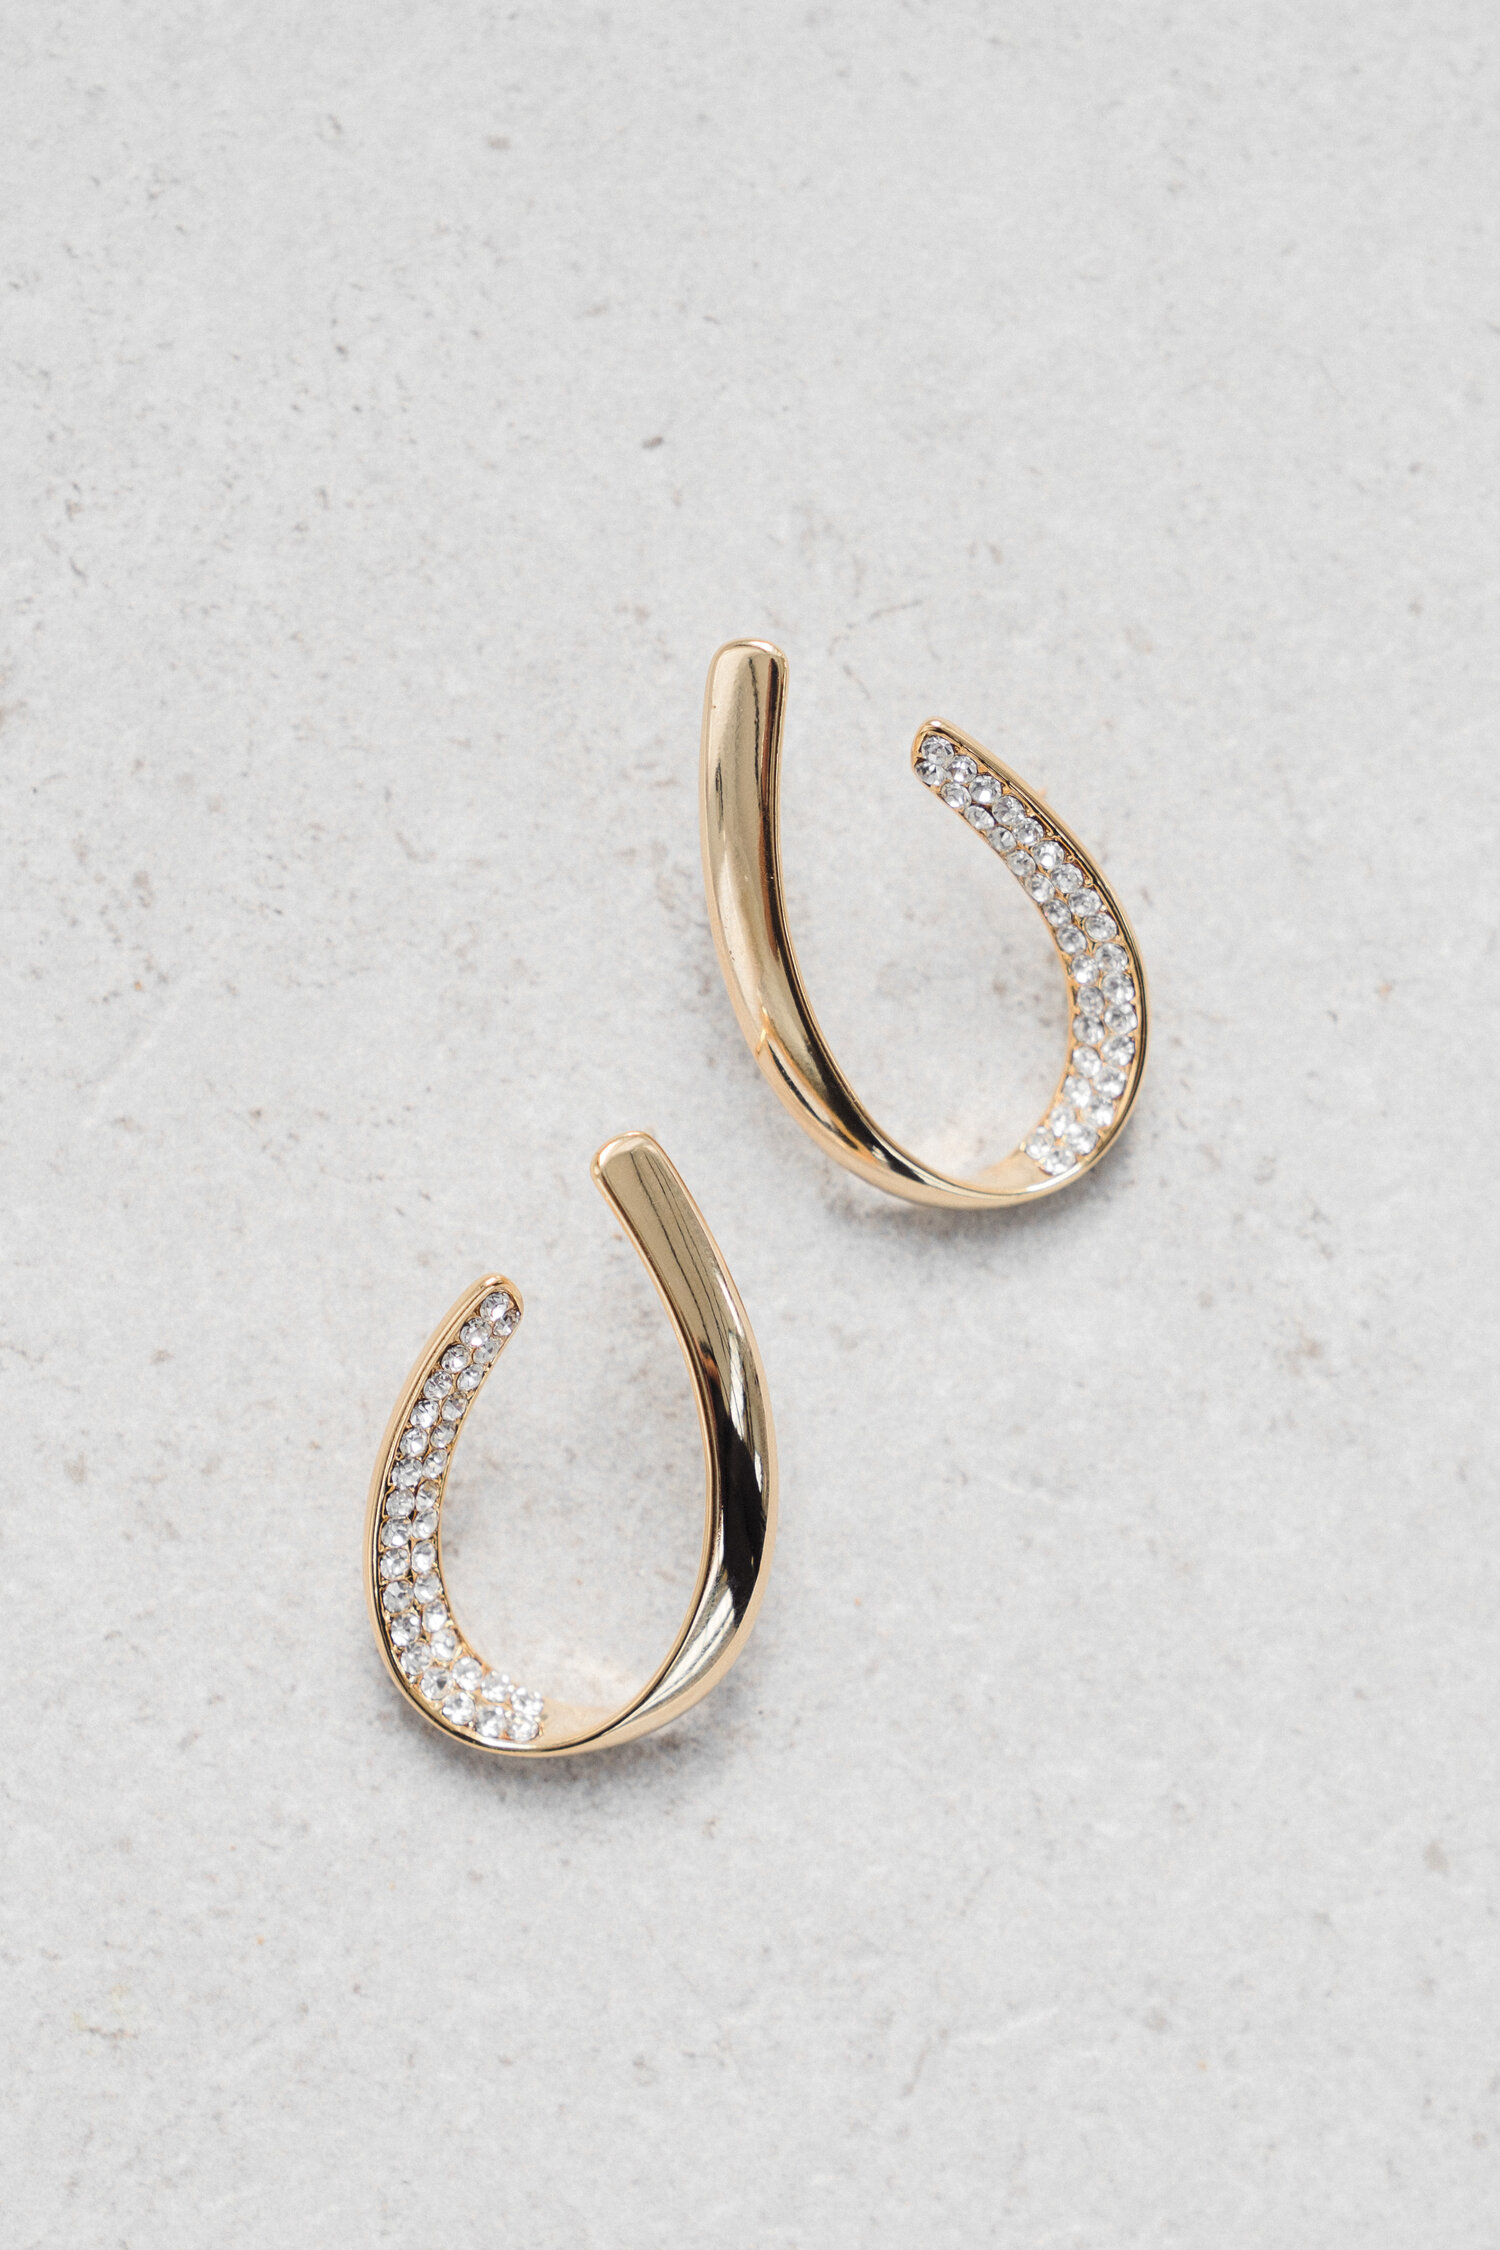 Jade Oi Bridal Jewelry Allegra Earrings rhinestones gold hoop earrings